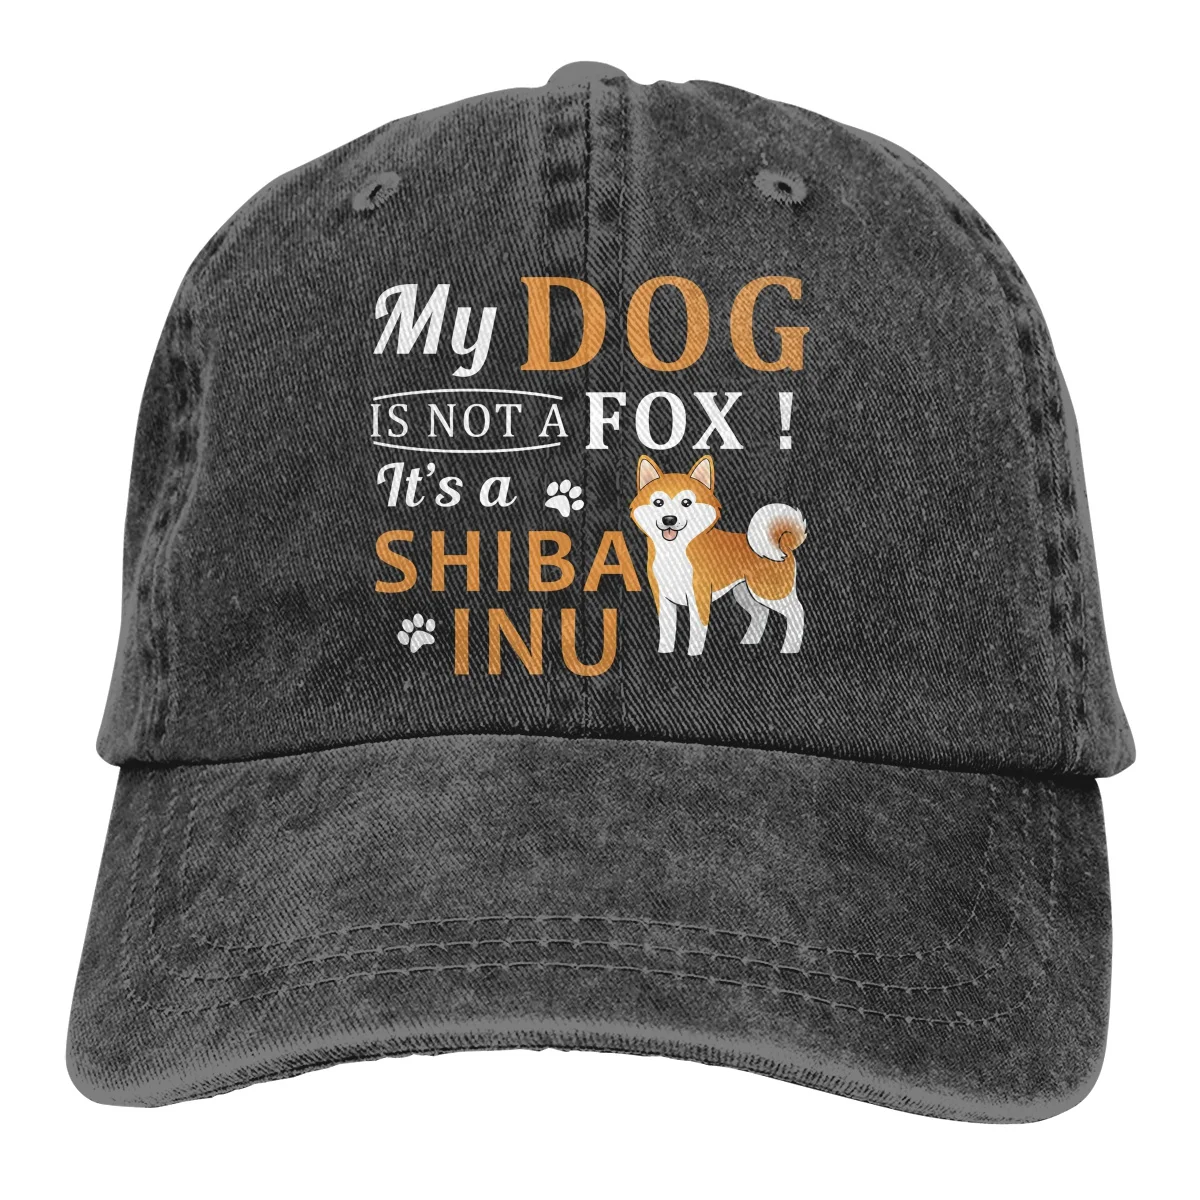 

Спортивная джинсовая кепка My Dog Is Not A Fox A Shiba Inu, регулируемые кепки, бейсбольная Кепка унисекс в ковбойском стиле, Кепка Для Взрослых, уличная ...